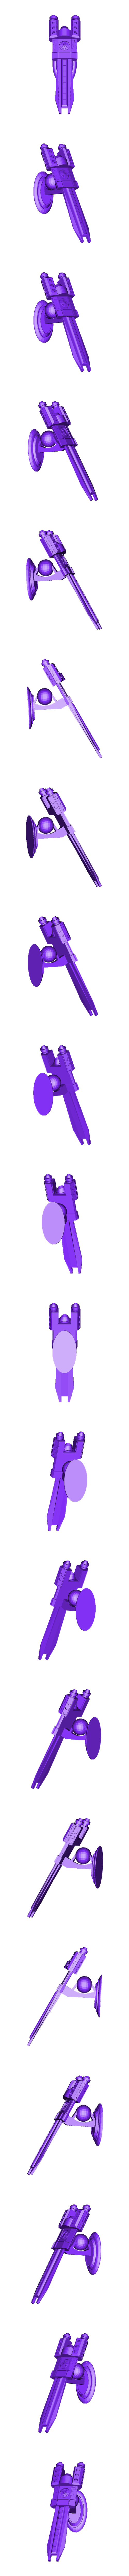 Zenit-T Spaceship.stl Télécharger fichier STL Zenit - Vaisseau spatial T • Plan imprimable en 3D, elitemodelry